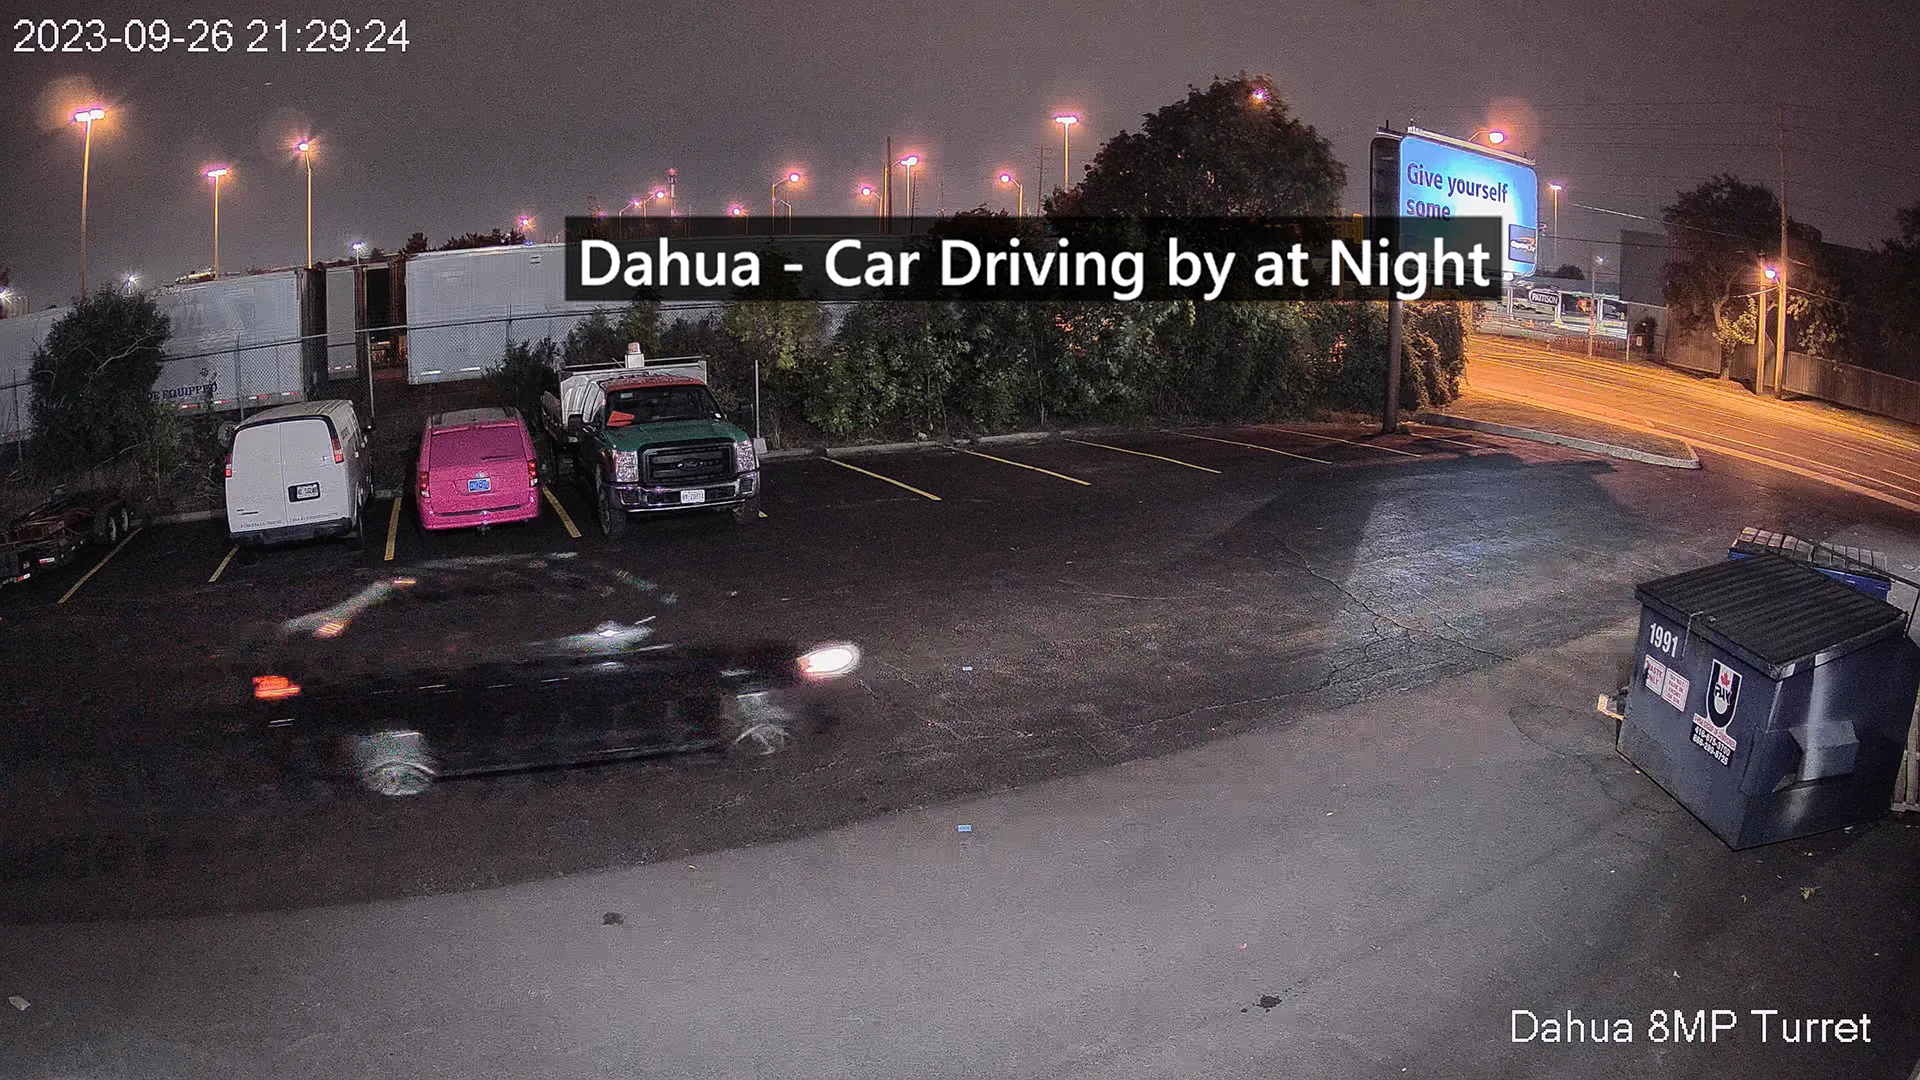 Car Driving by at Night - Dahua